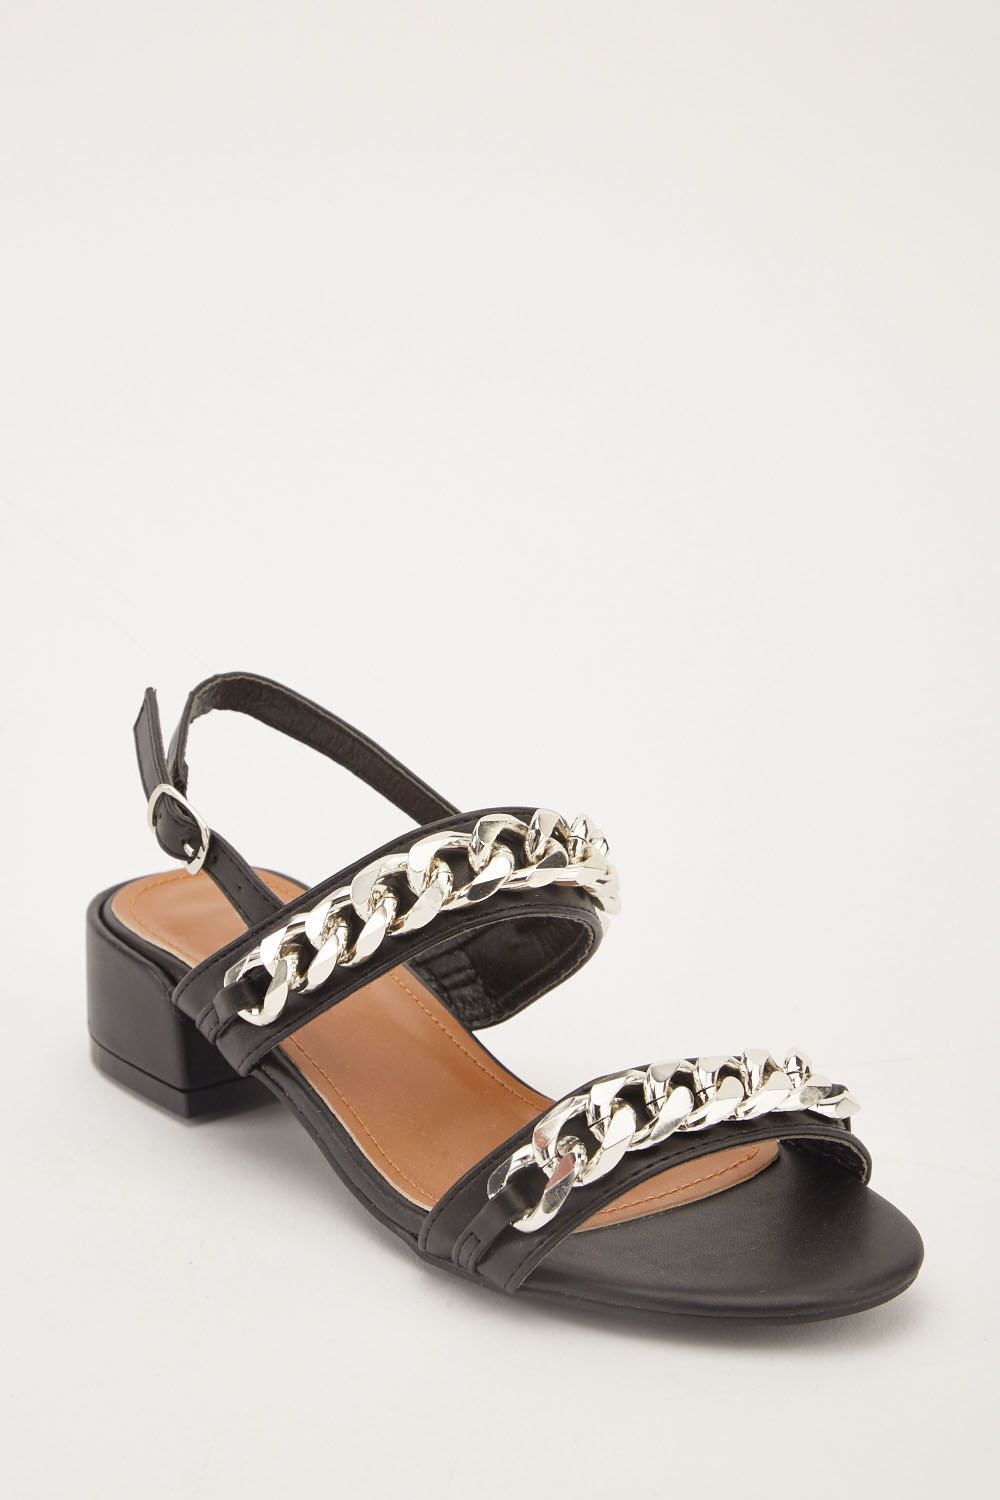 Chain Trim Heel Sandals - Just $7